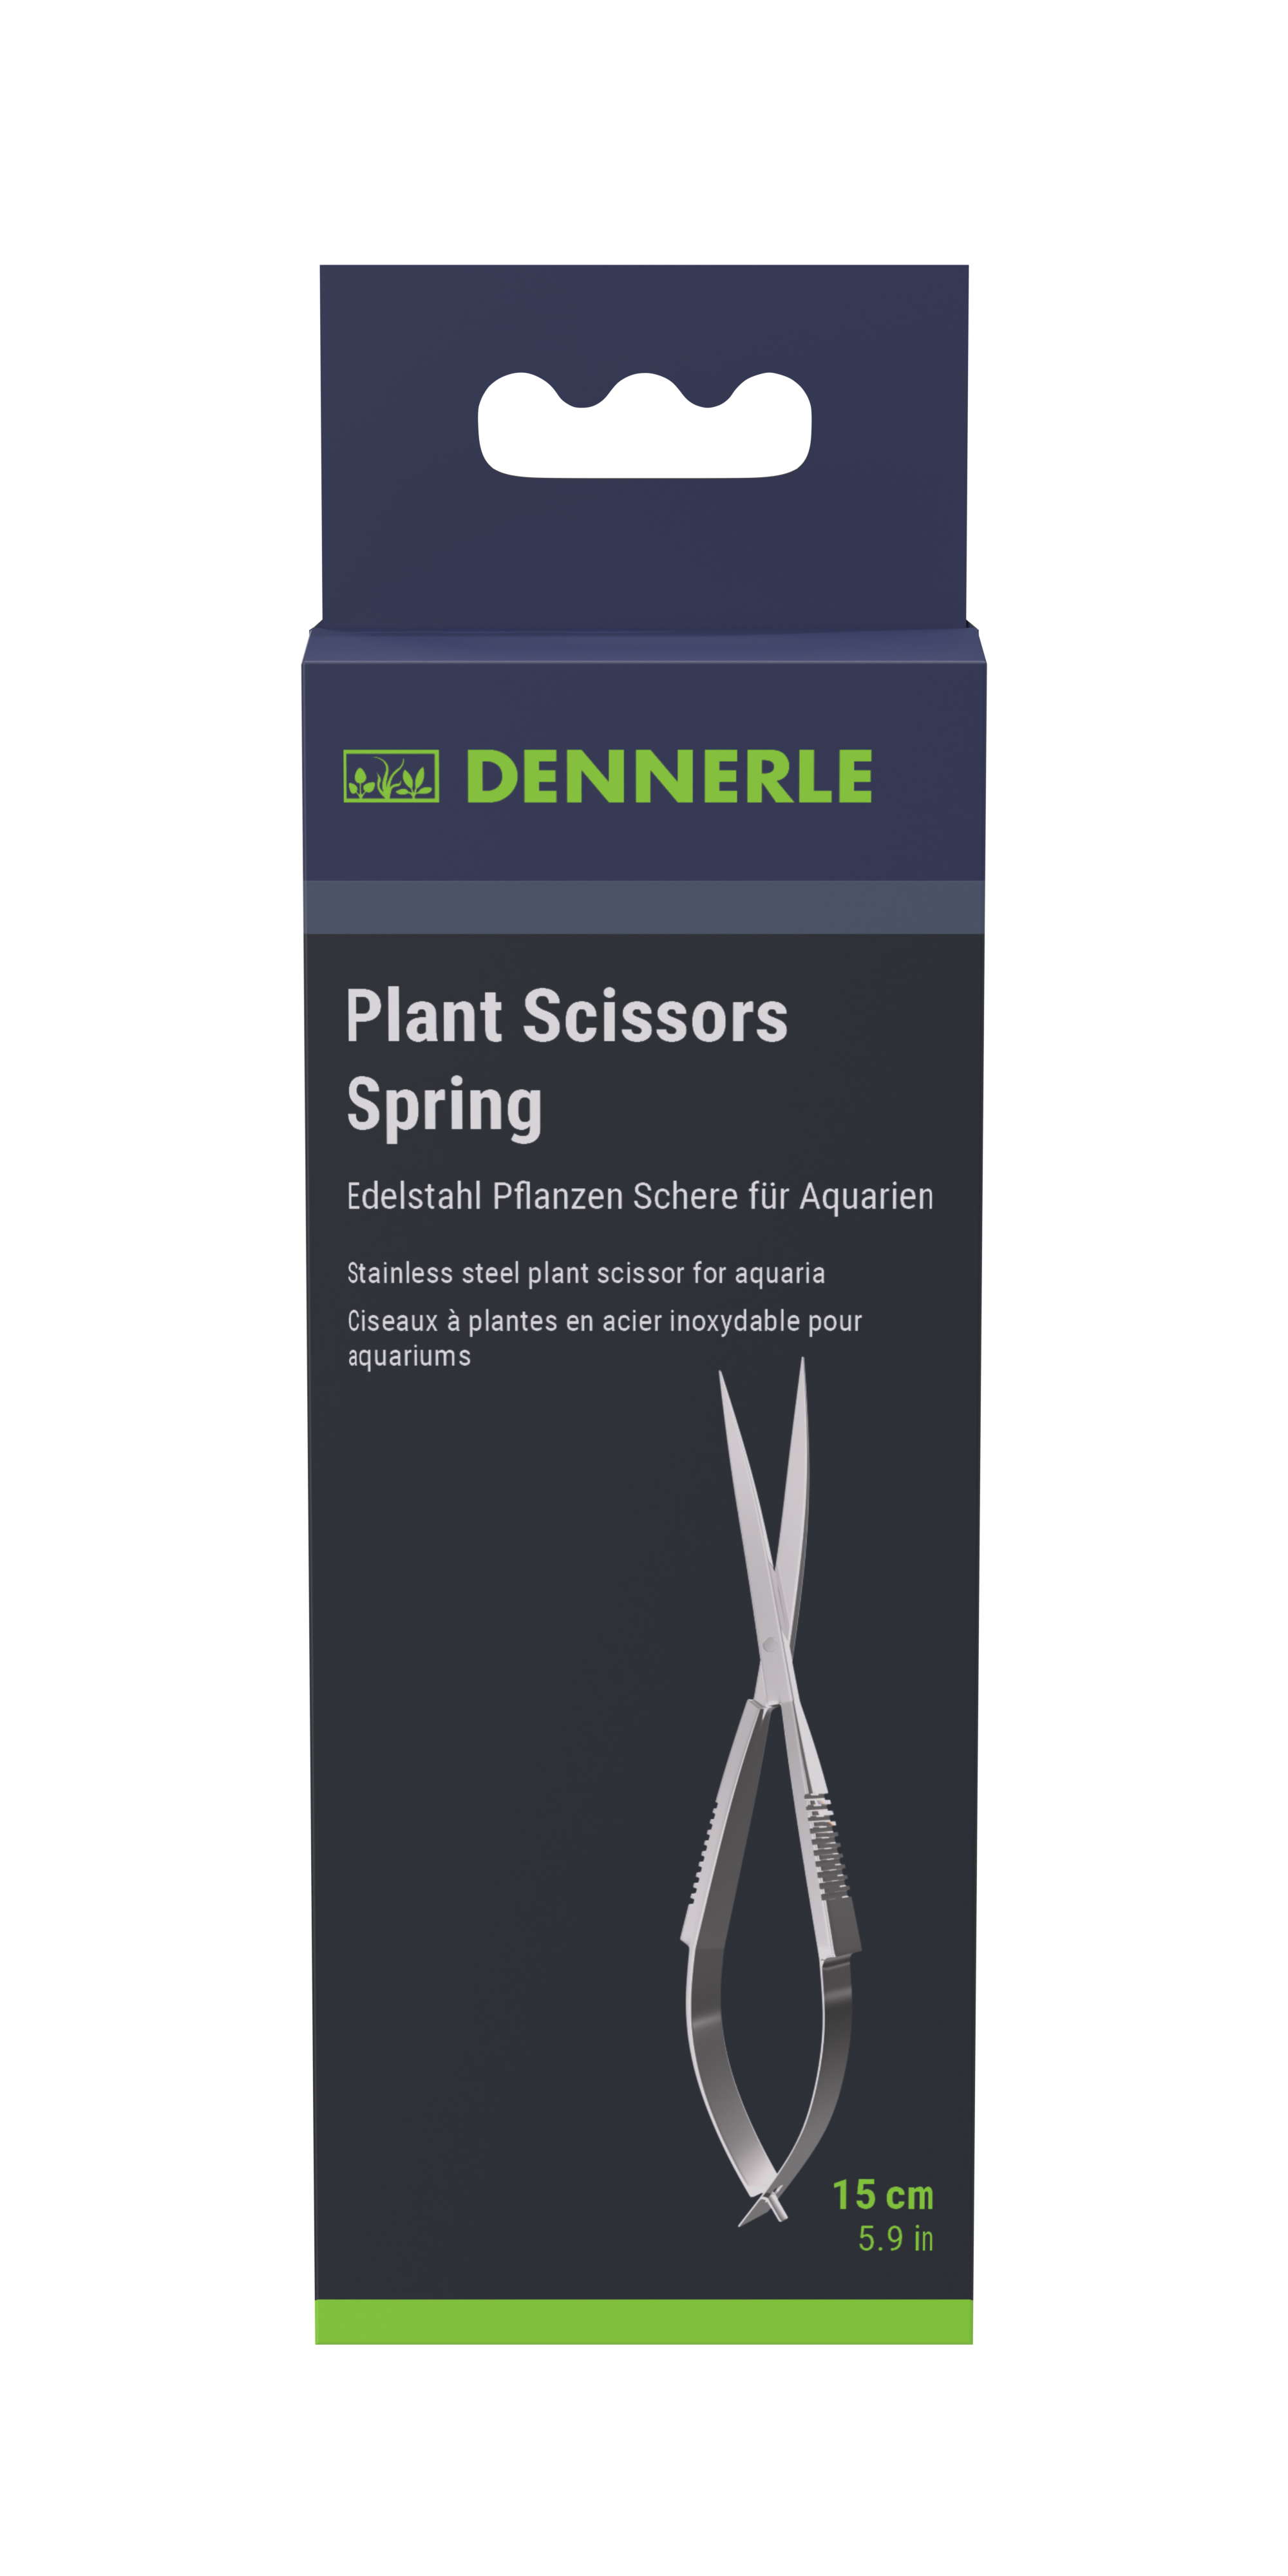 https://dennerle.com/app/uploads/sites/2/2022/10/2877_VP_FRONT_Plant_Scissors_Spring.png